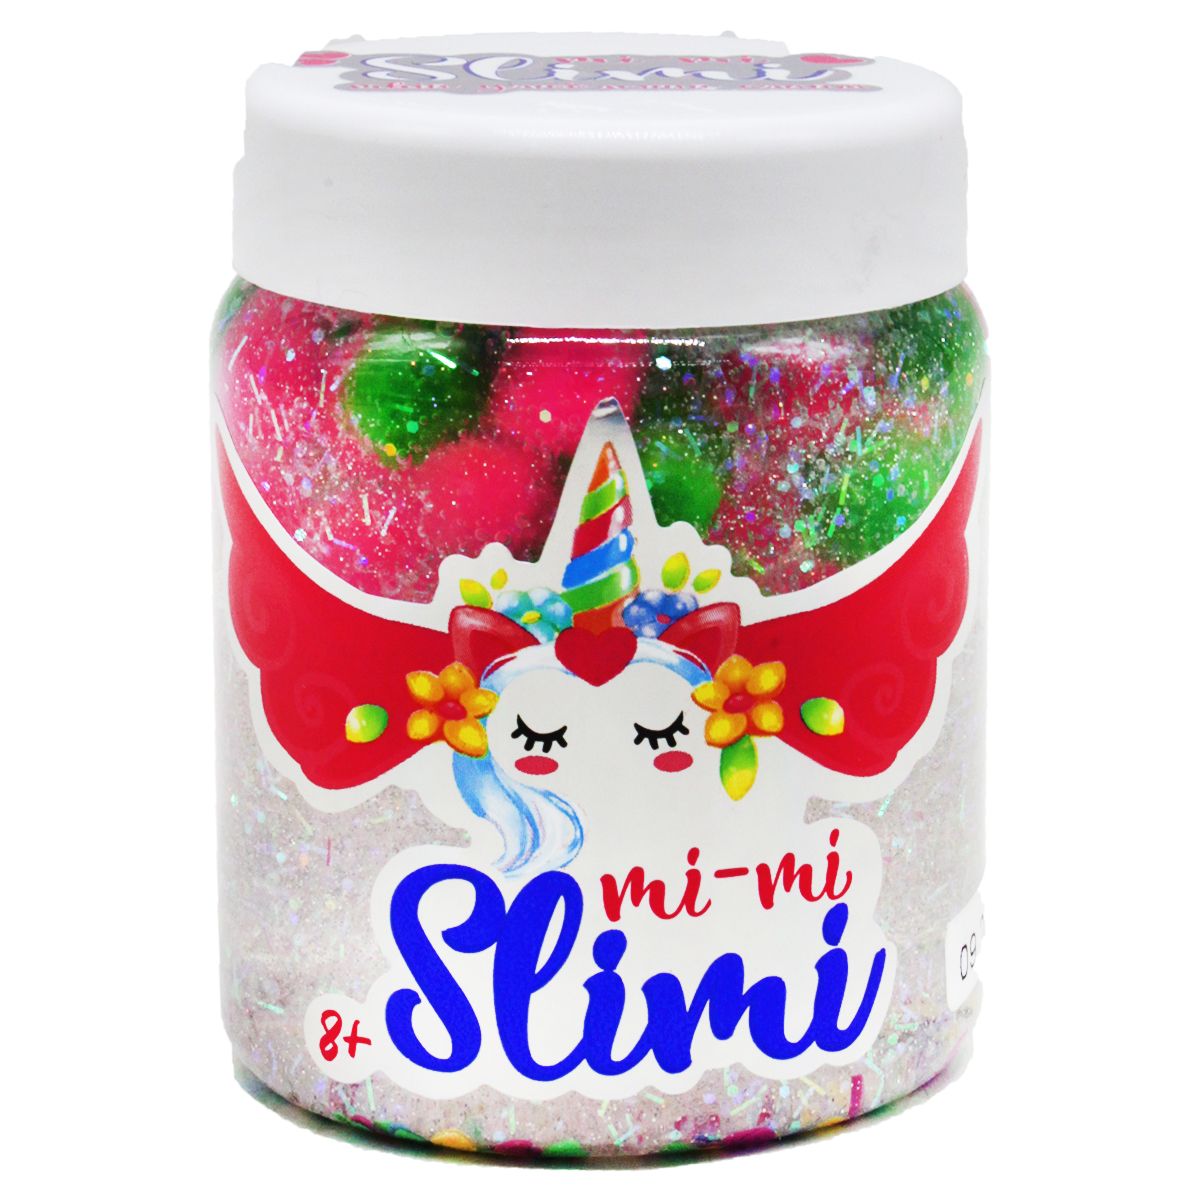 Слайм "Mi-mi Slimi", 150 г вид 3